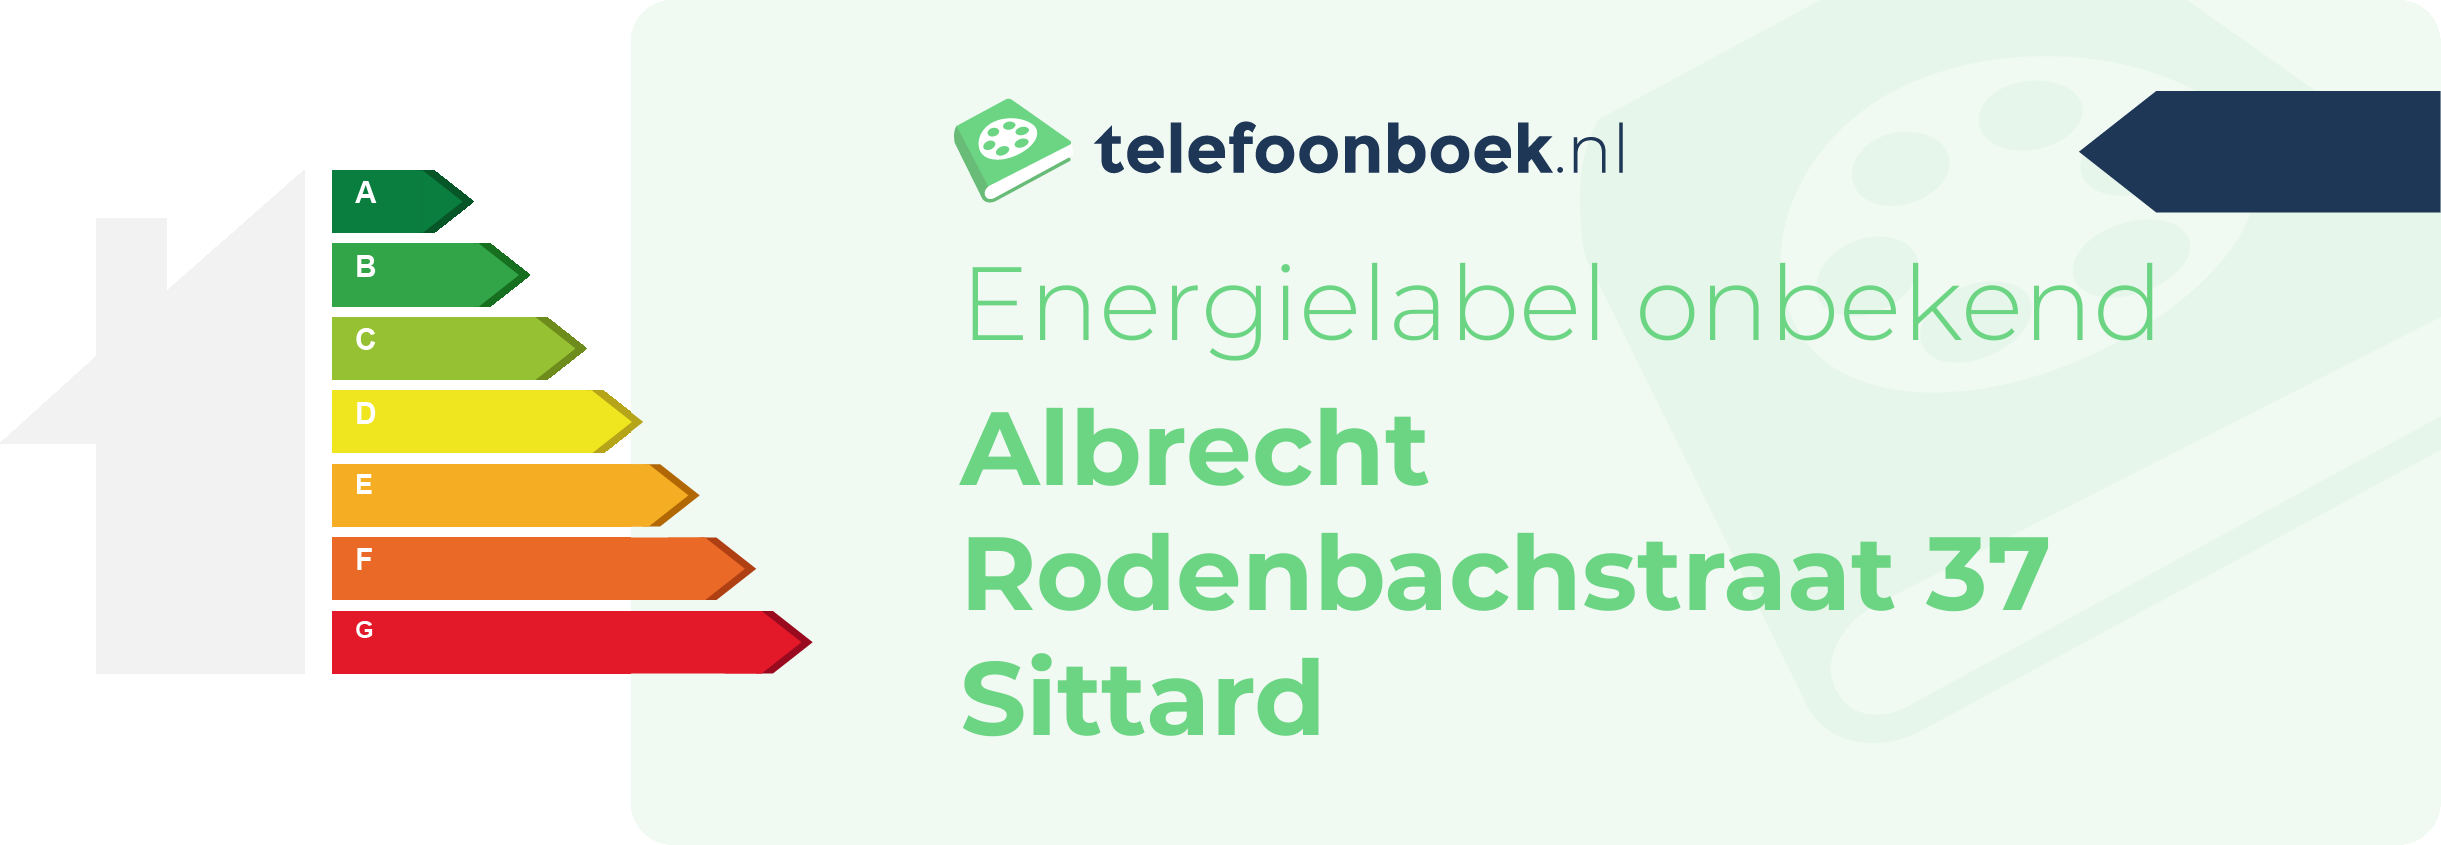 Energielabel Albrecht Rodenbachstraat 37 Sittard